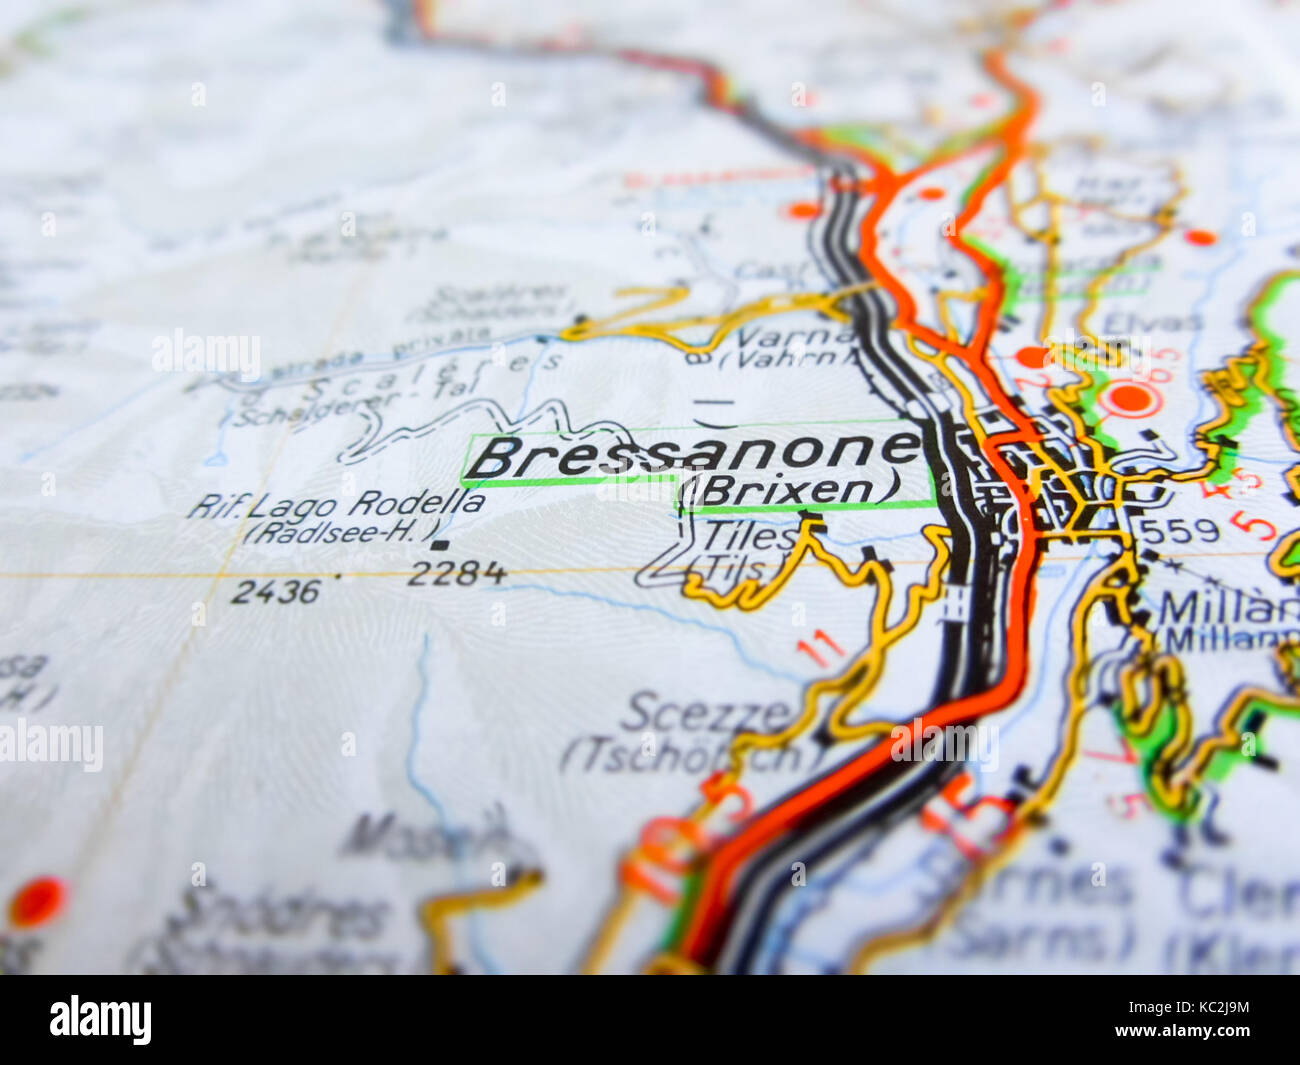 Ville de Bressanone, sur une carte routière (Italie) Banque D'Images